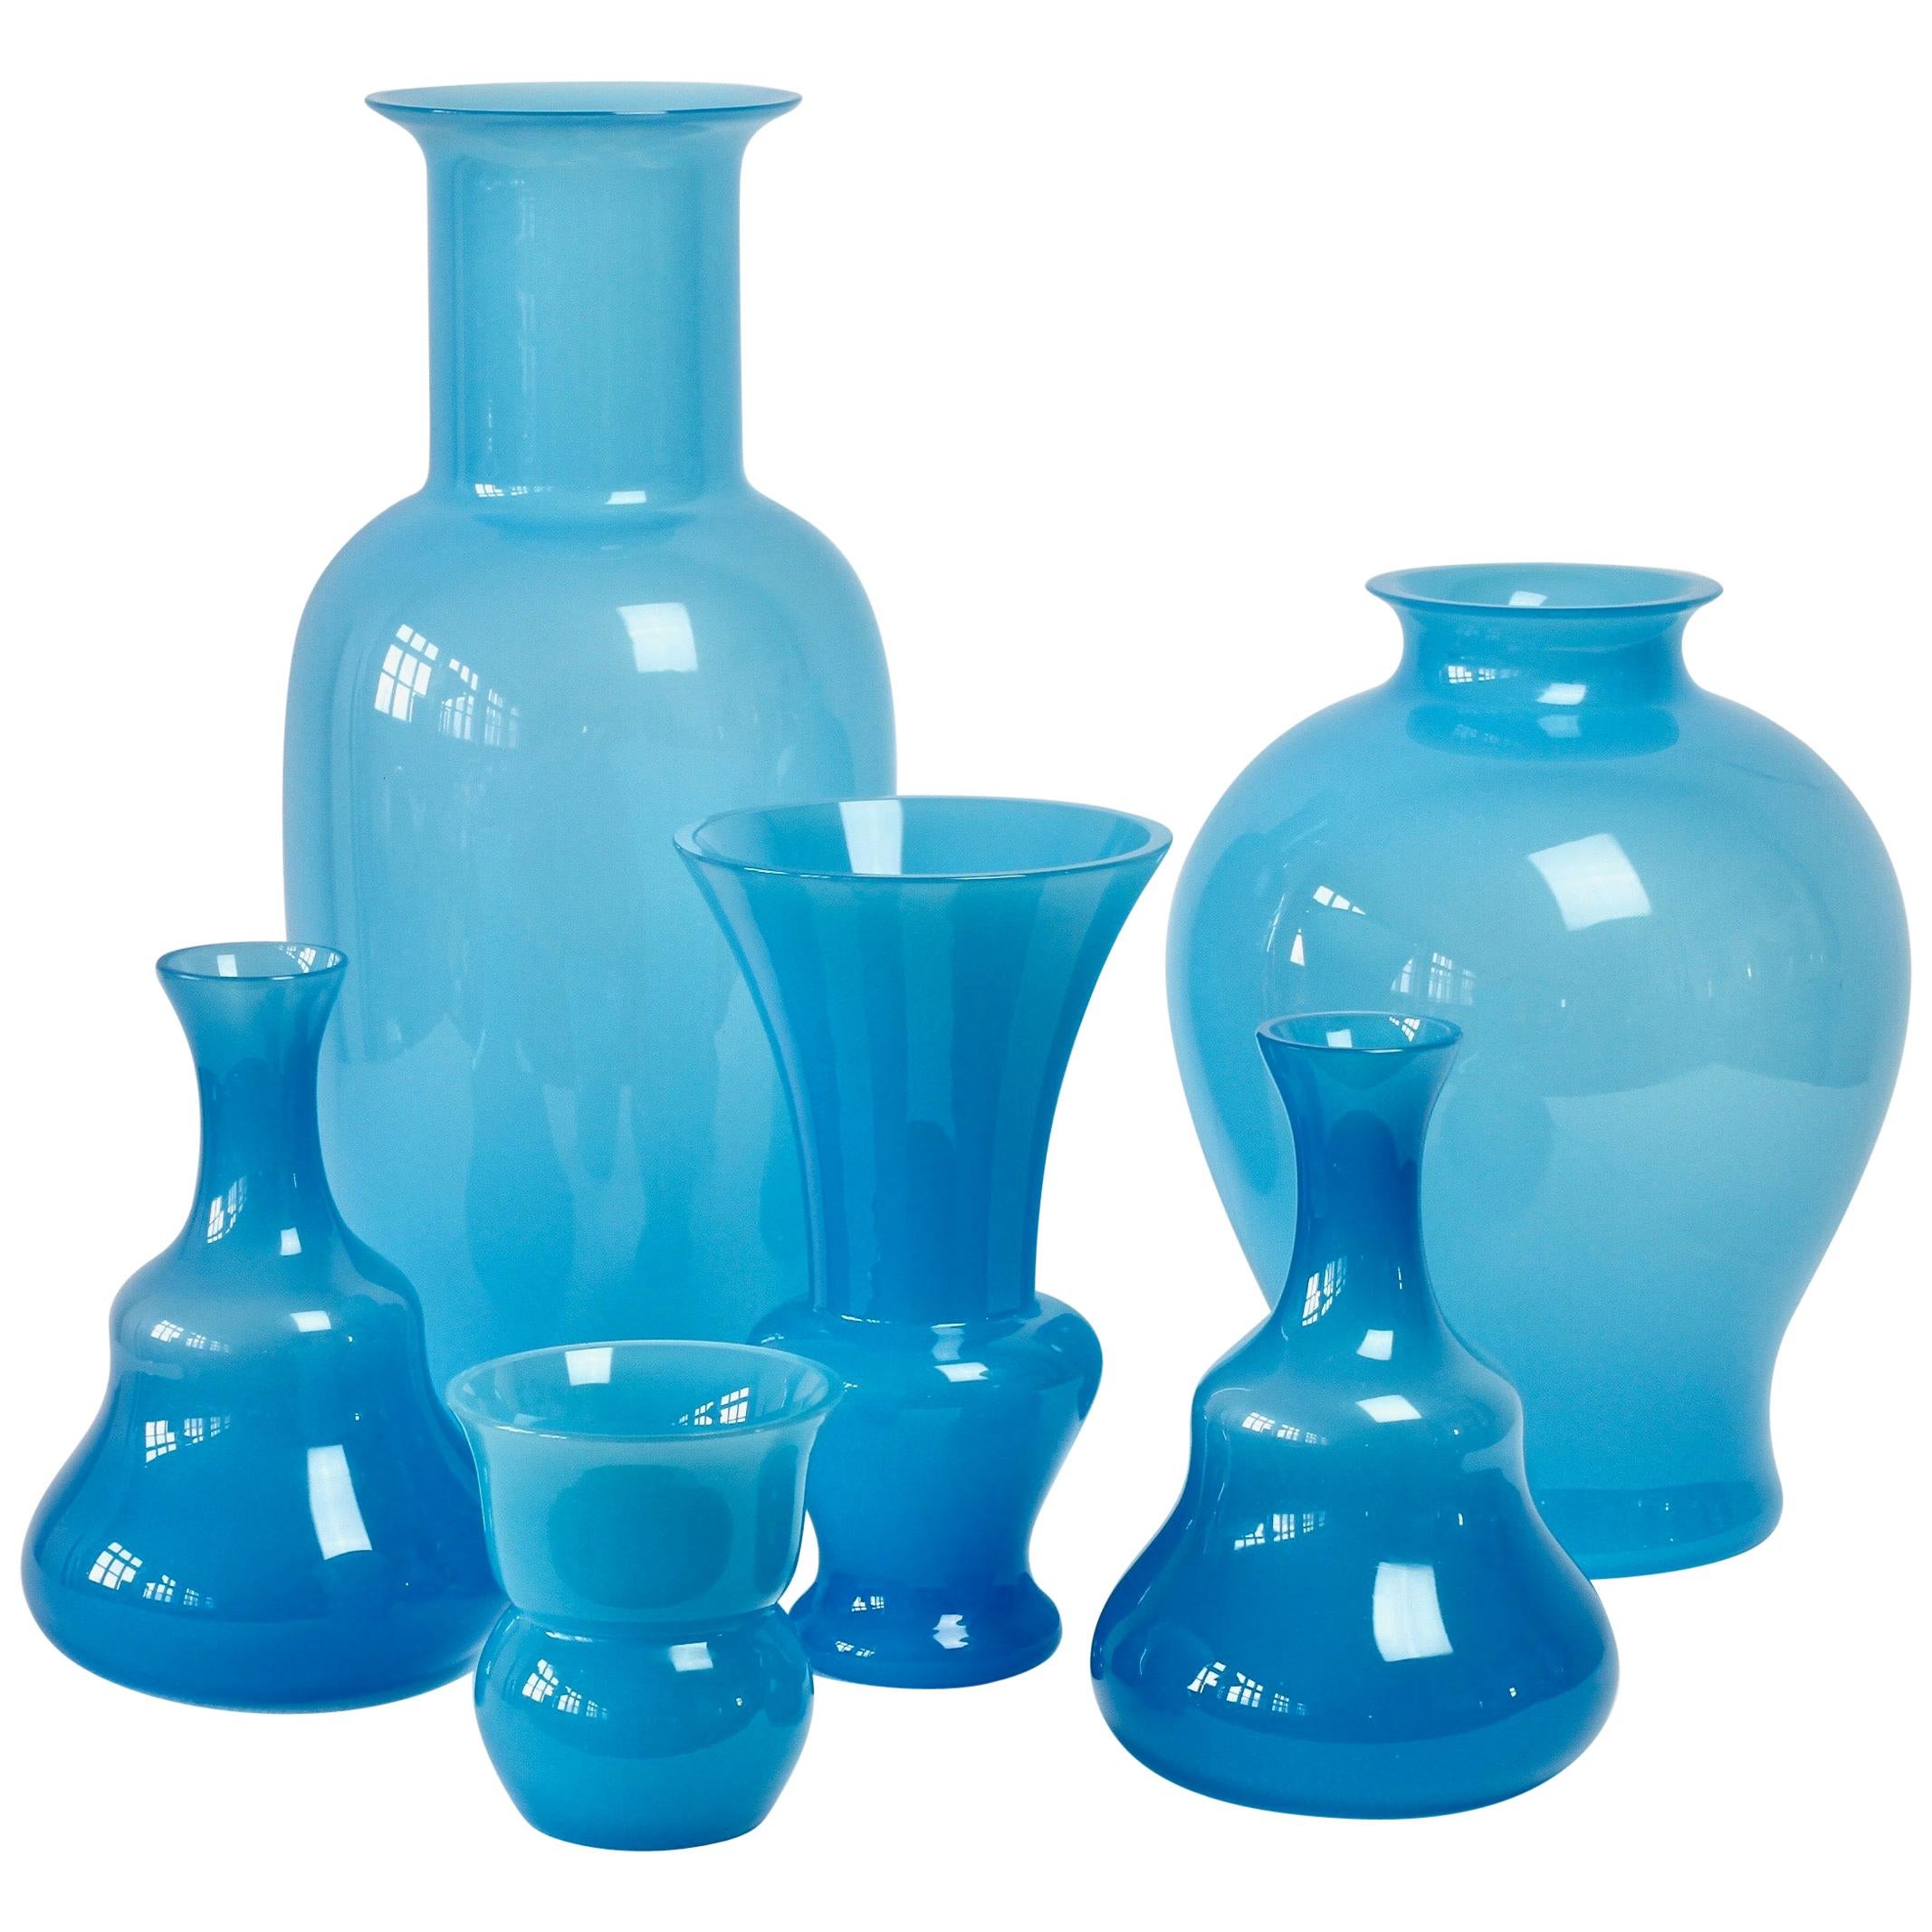 Cenedese Ensemble of Light Blue Vintage Italian Murano Art Glass Vases & Vessels